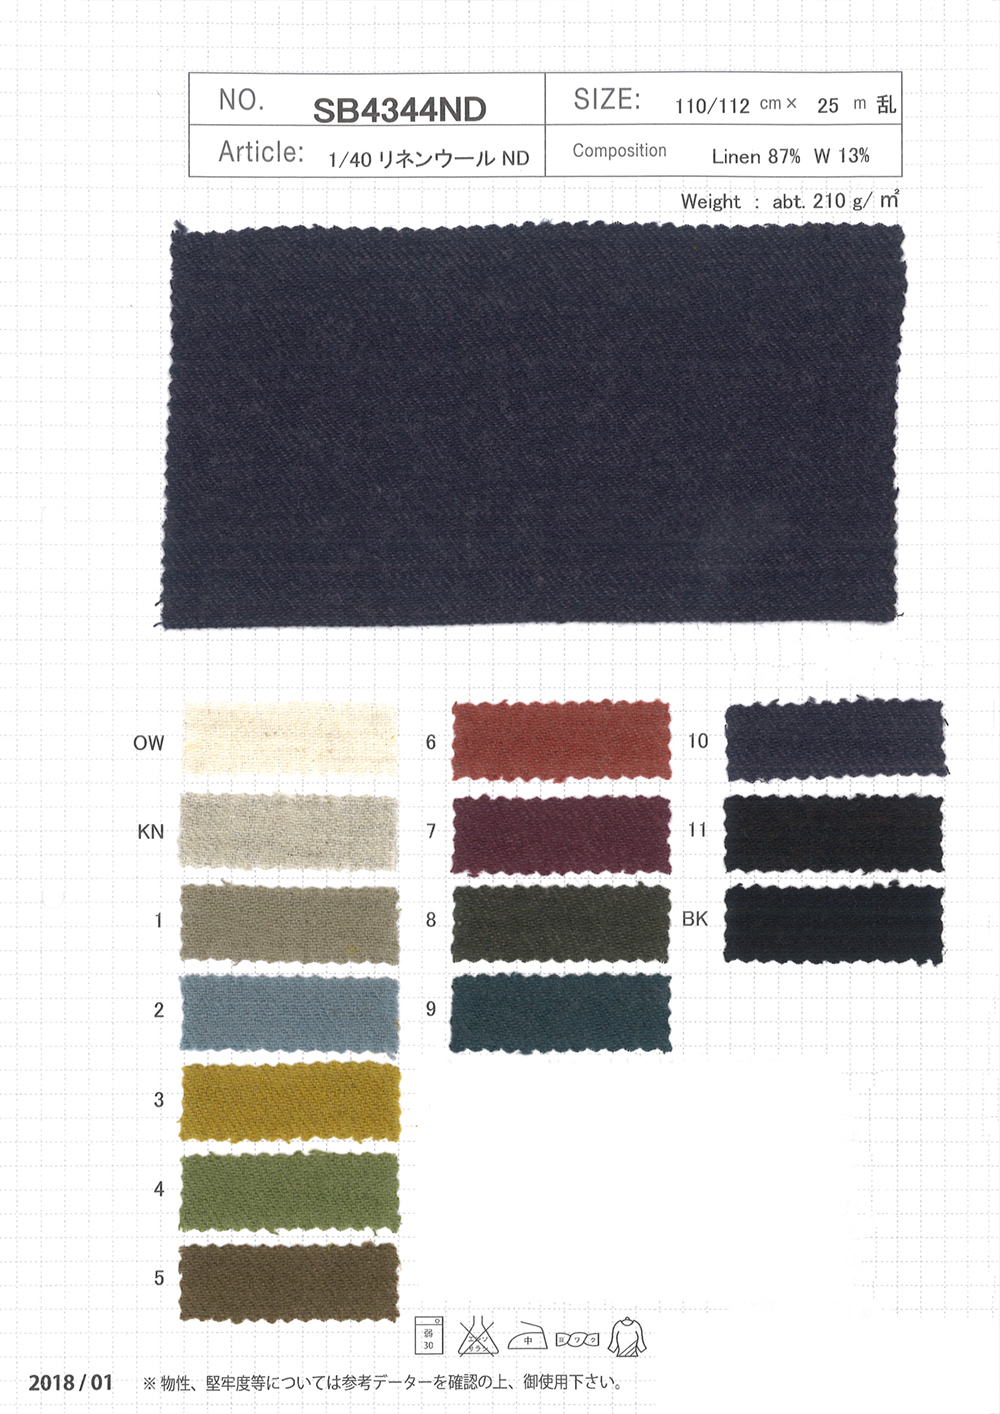 SB4344ND 1/40 Linen Wool ND[Textile / Fabric] SHIBAYA